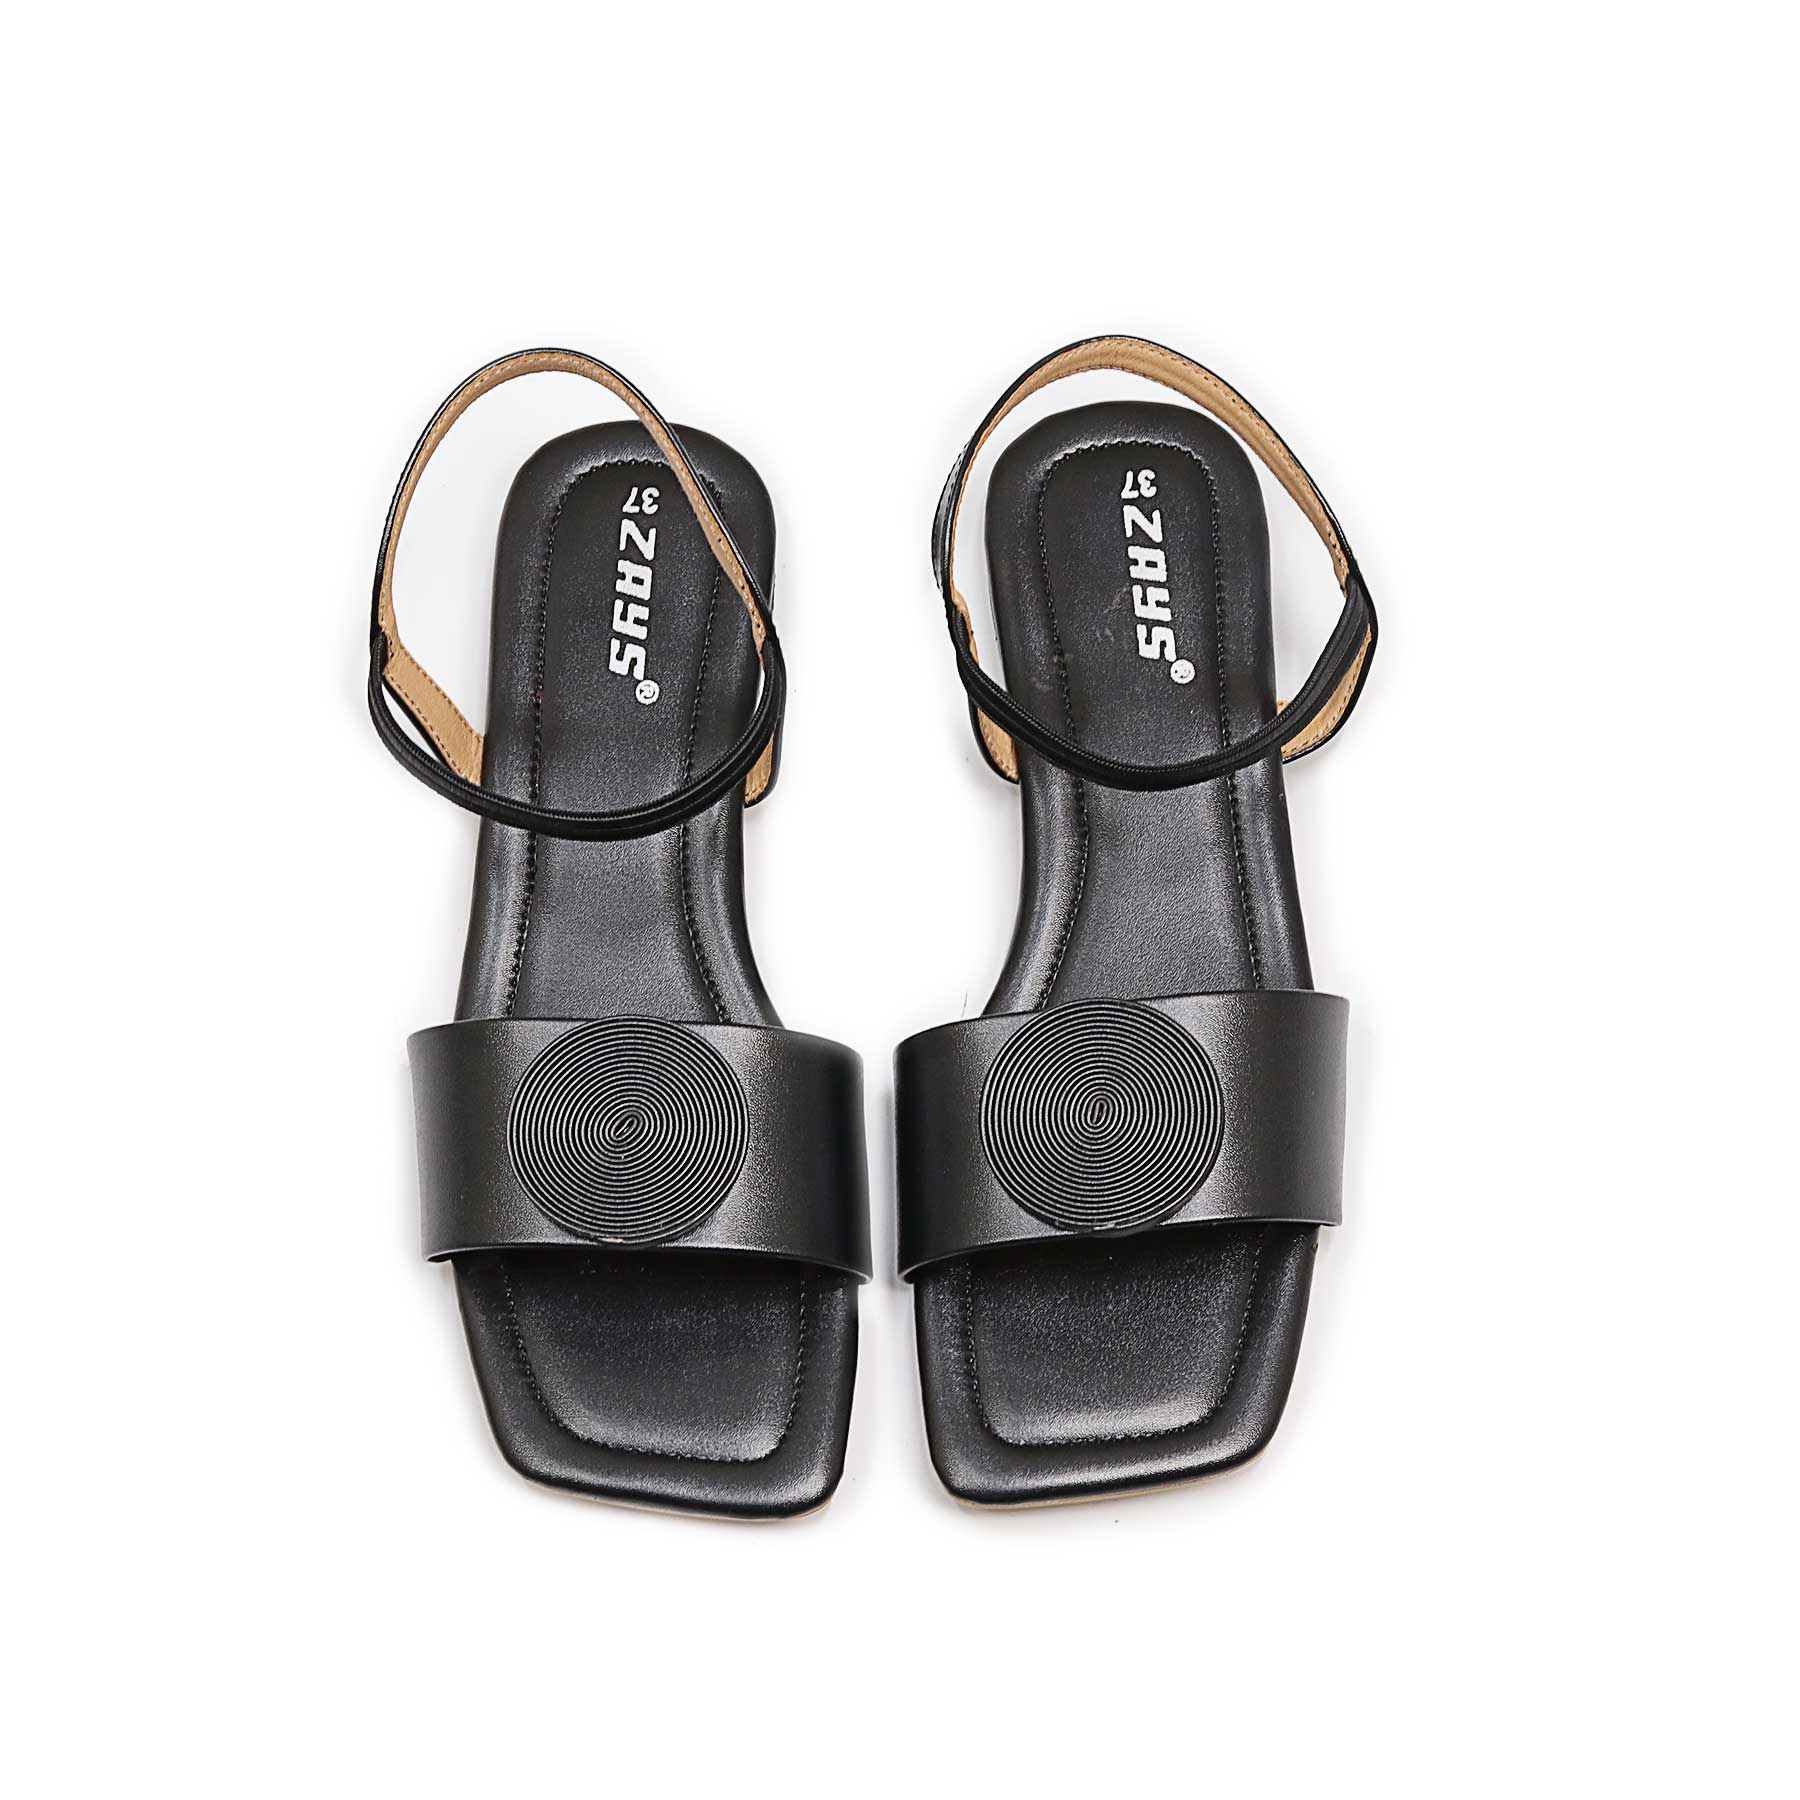 Zays Premium Sandal For Women (Black) - LS06